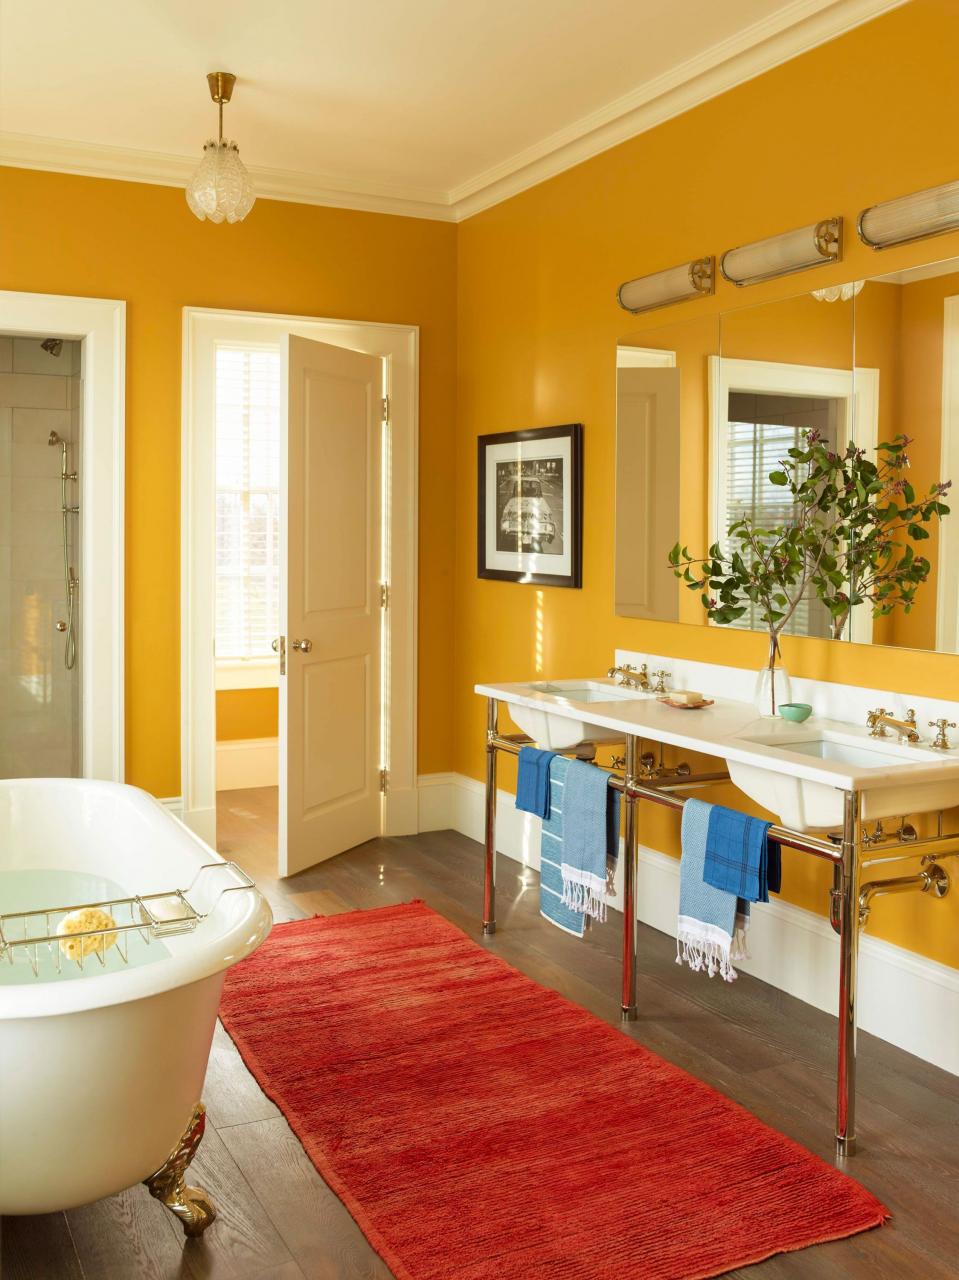 Mustard Gold Bedroom Paint in 2020 Yellow bathrooms, Yellow bathroom